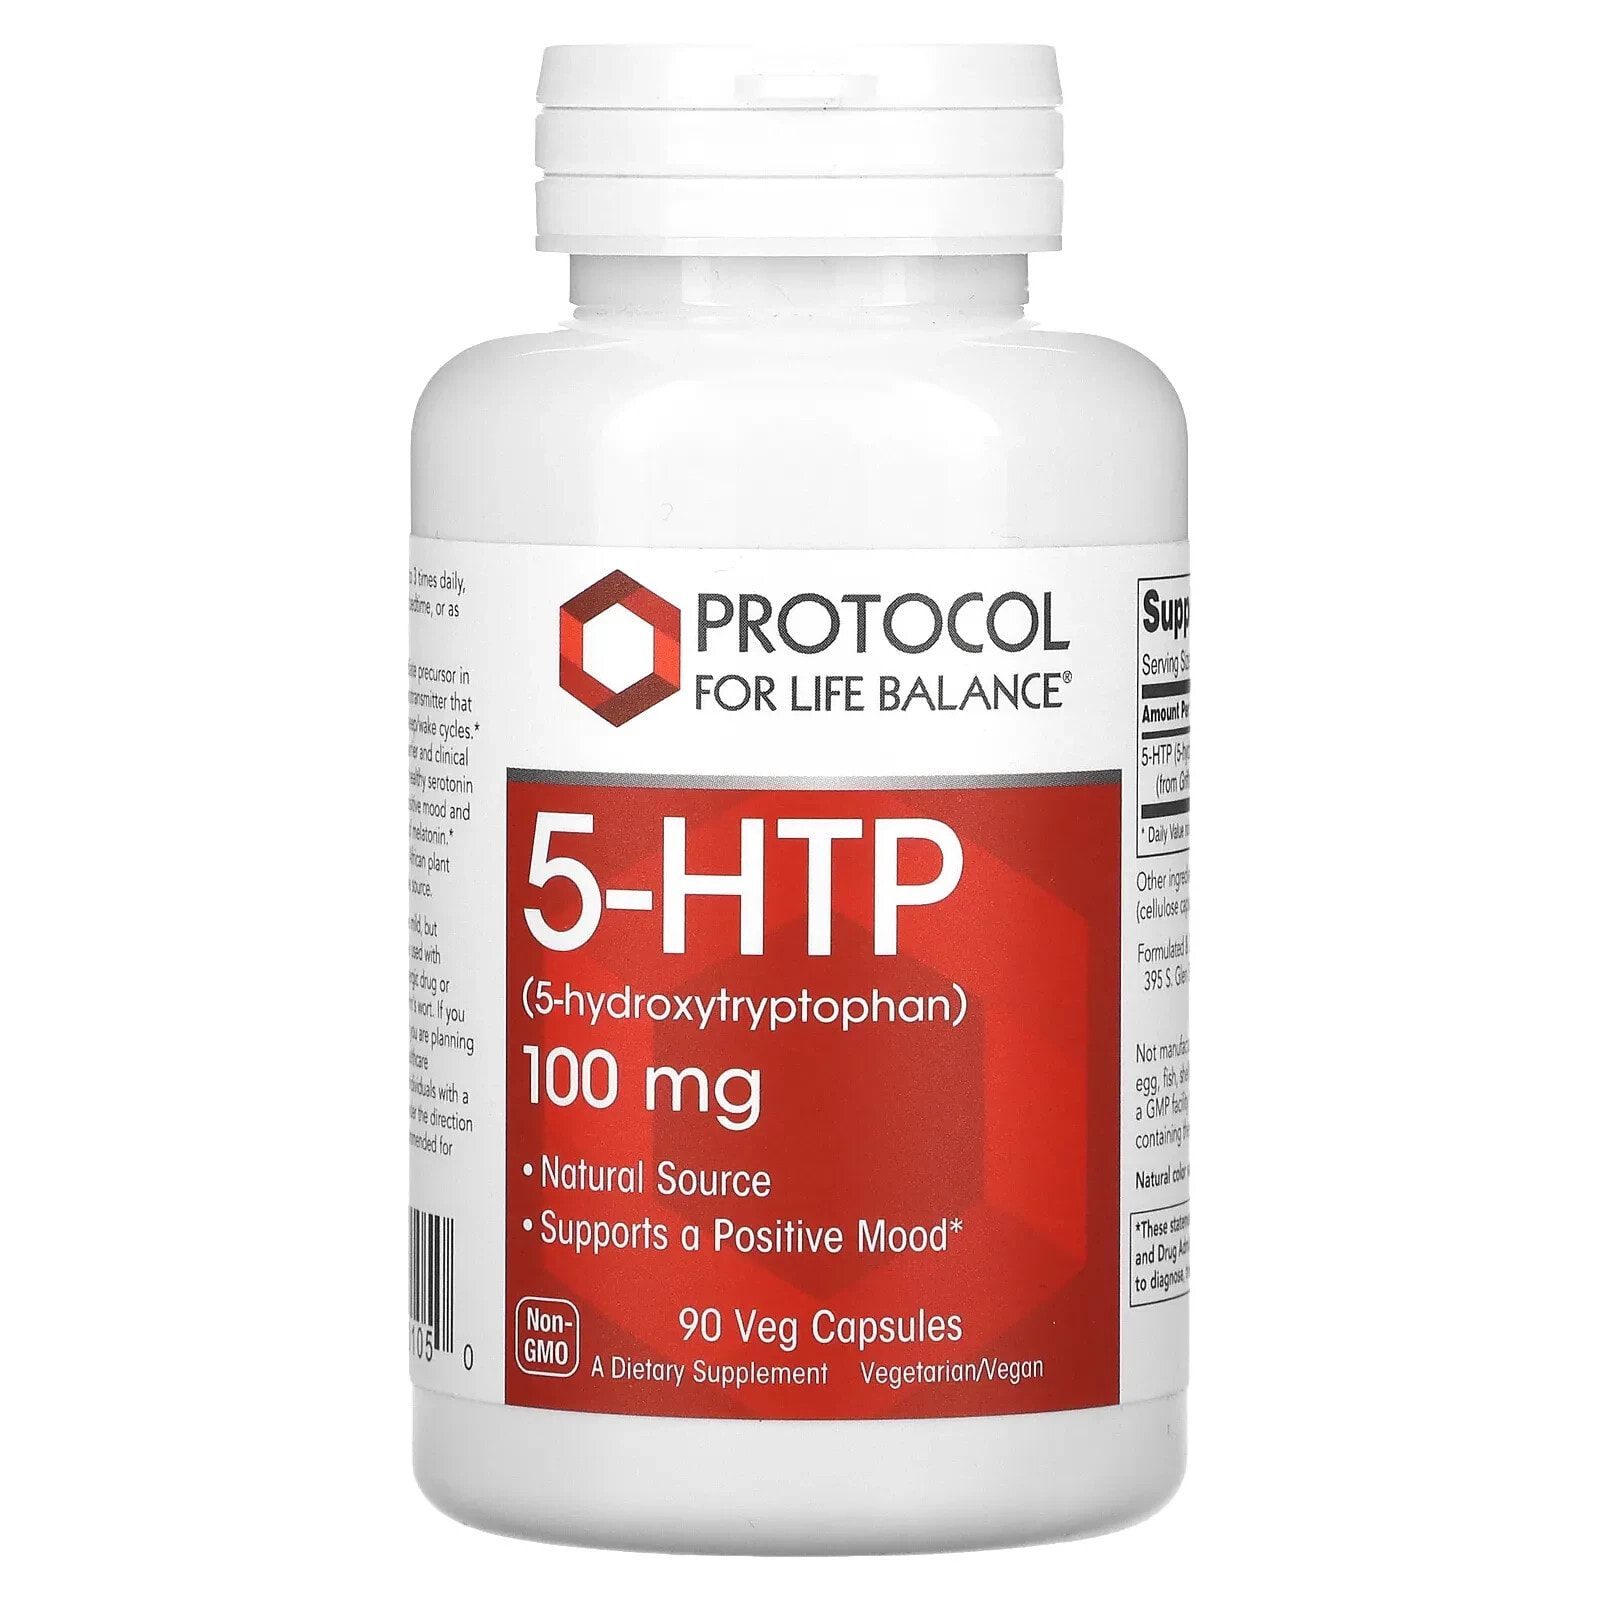 Protocol for Life Balance, 5-HTP, 200 mg, 60 Veg Capsules